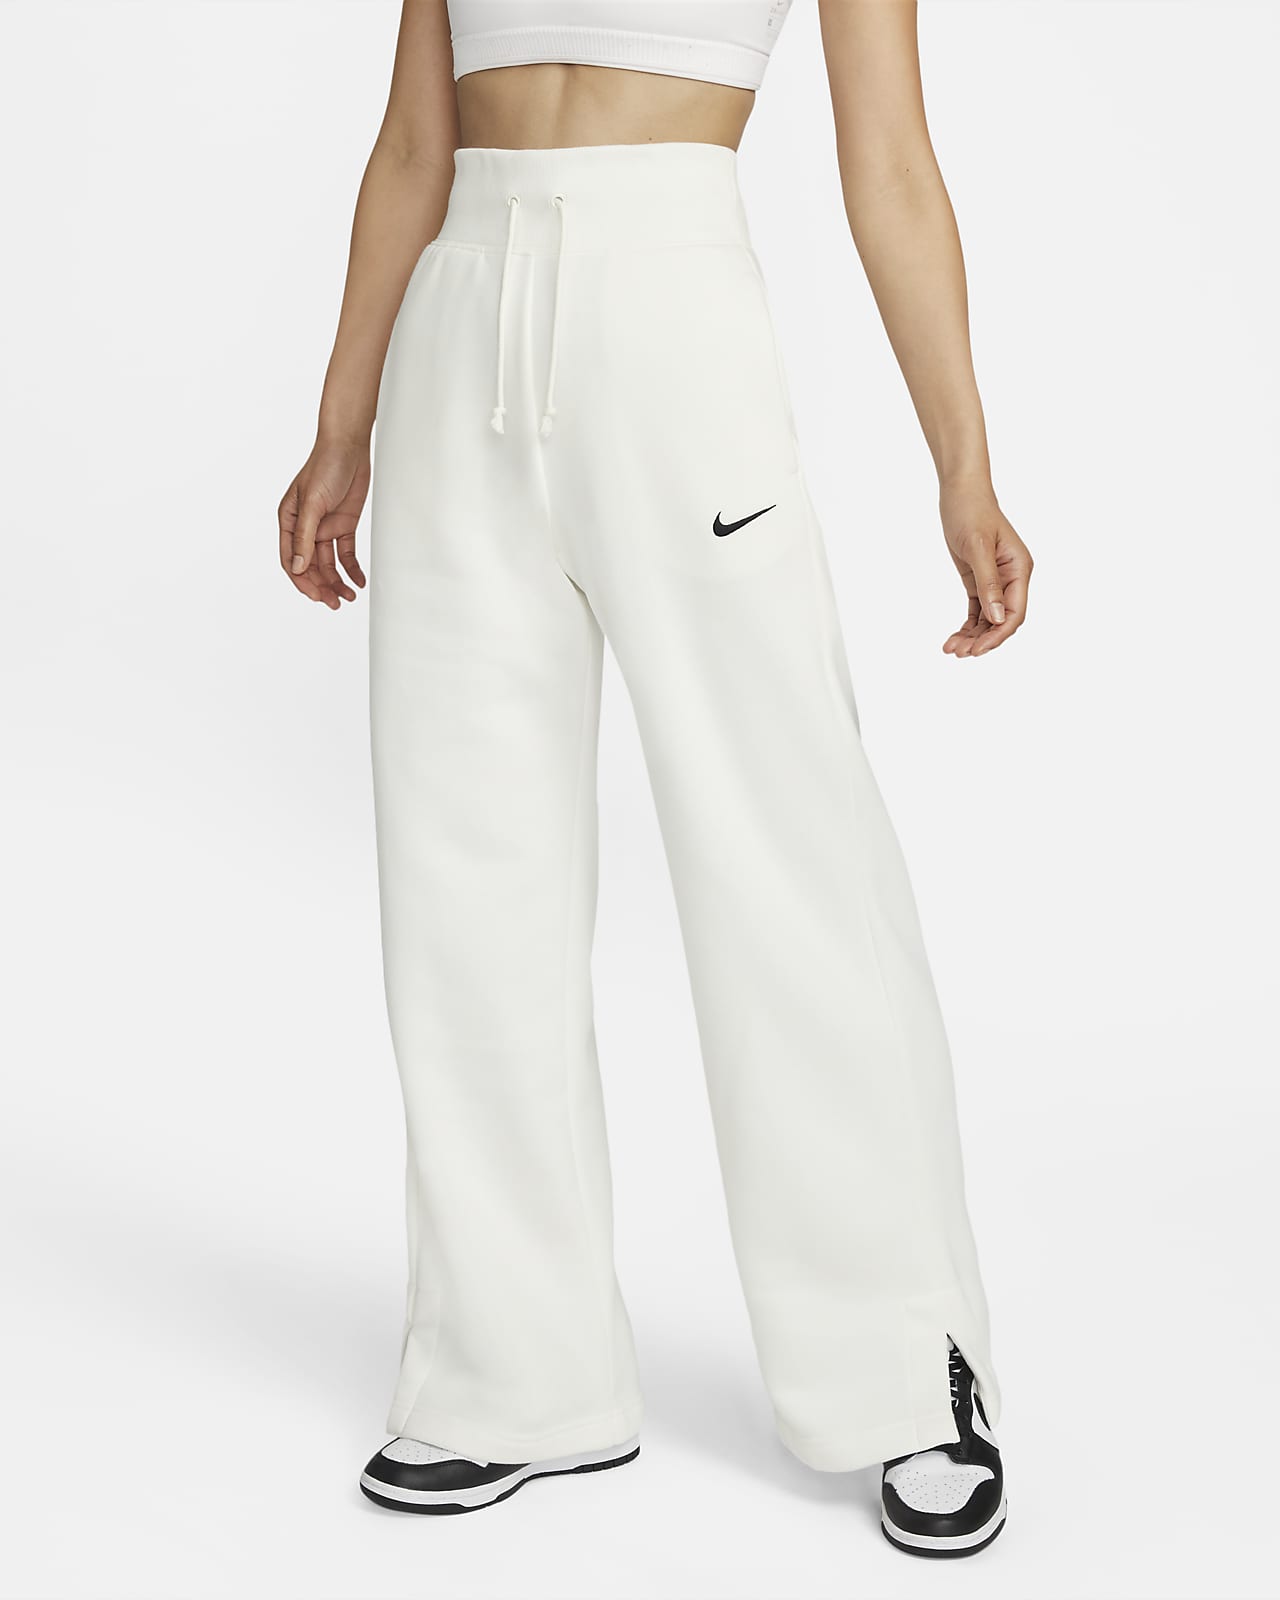 Nike Sportswear Phoenix Fleece 女款高腰寬褲管運動褲